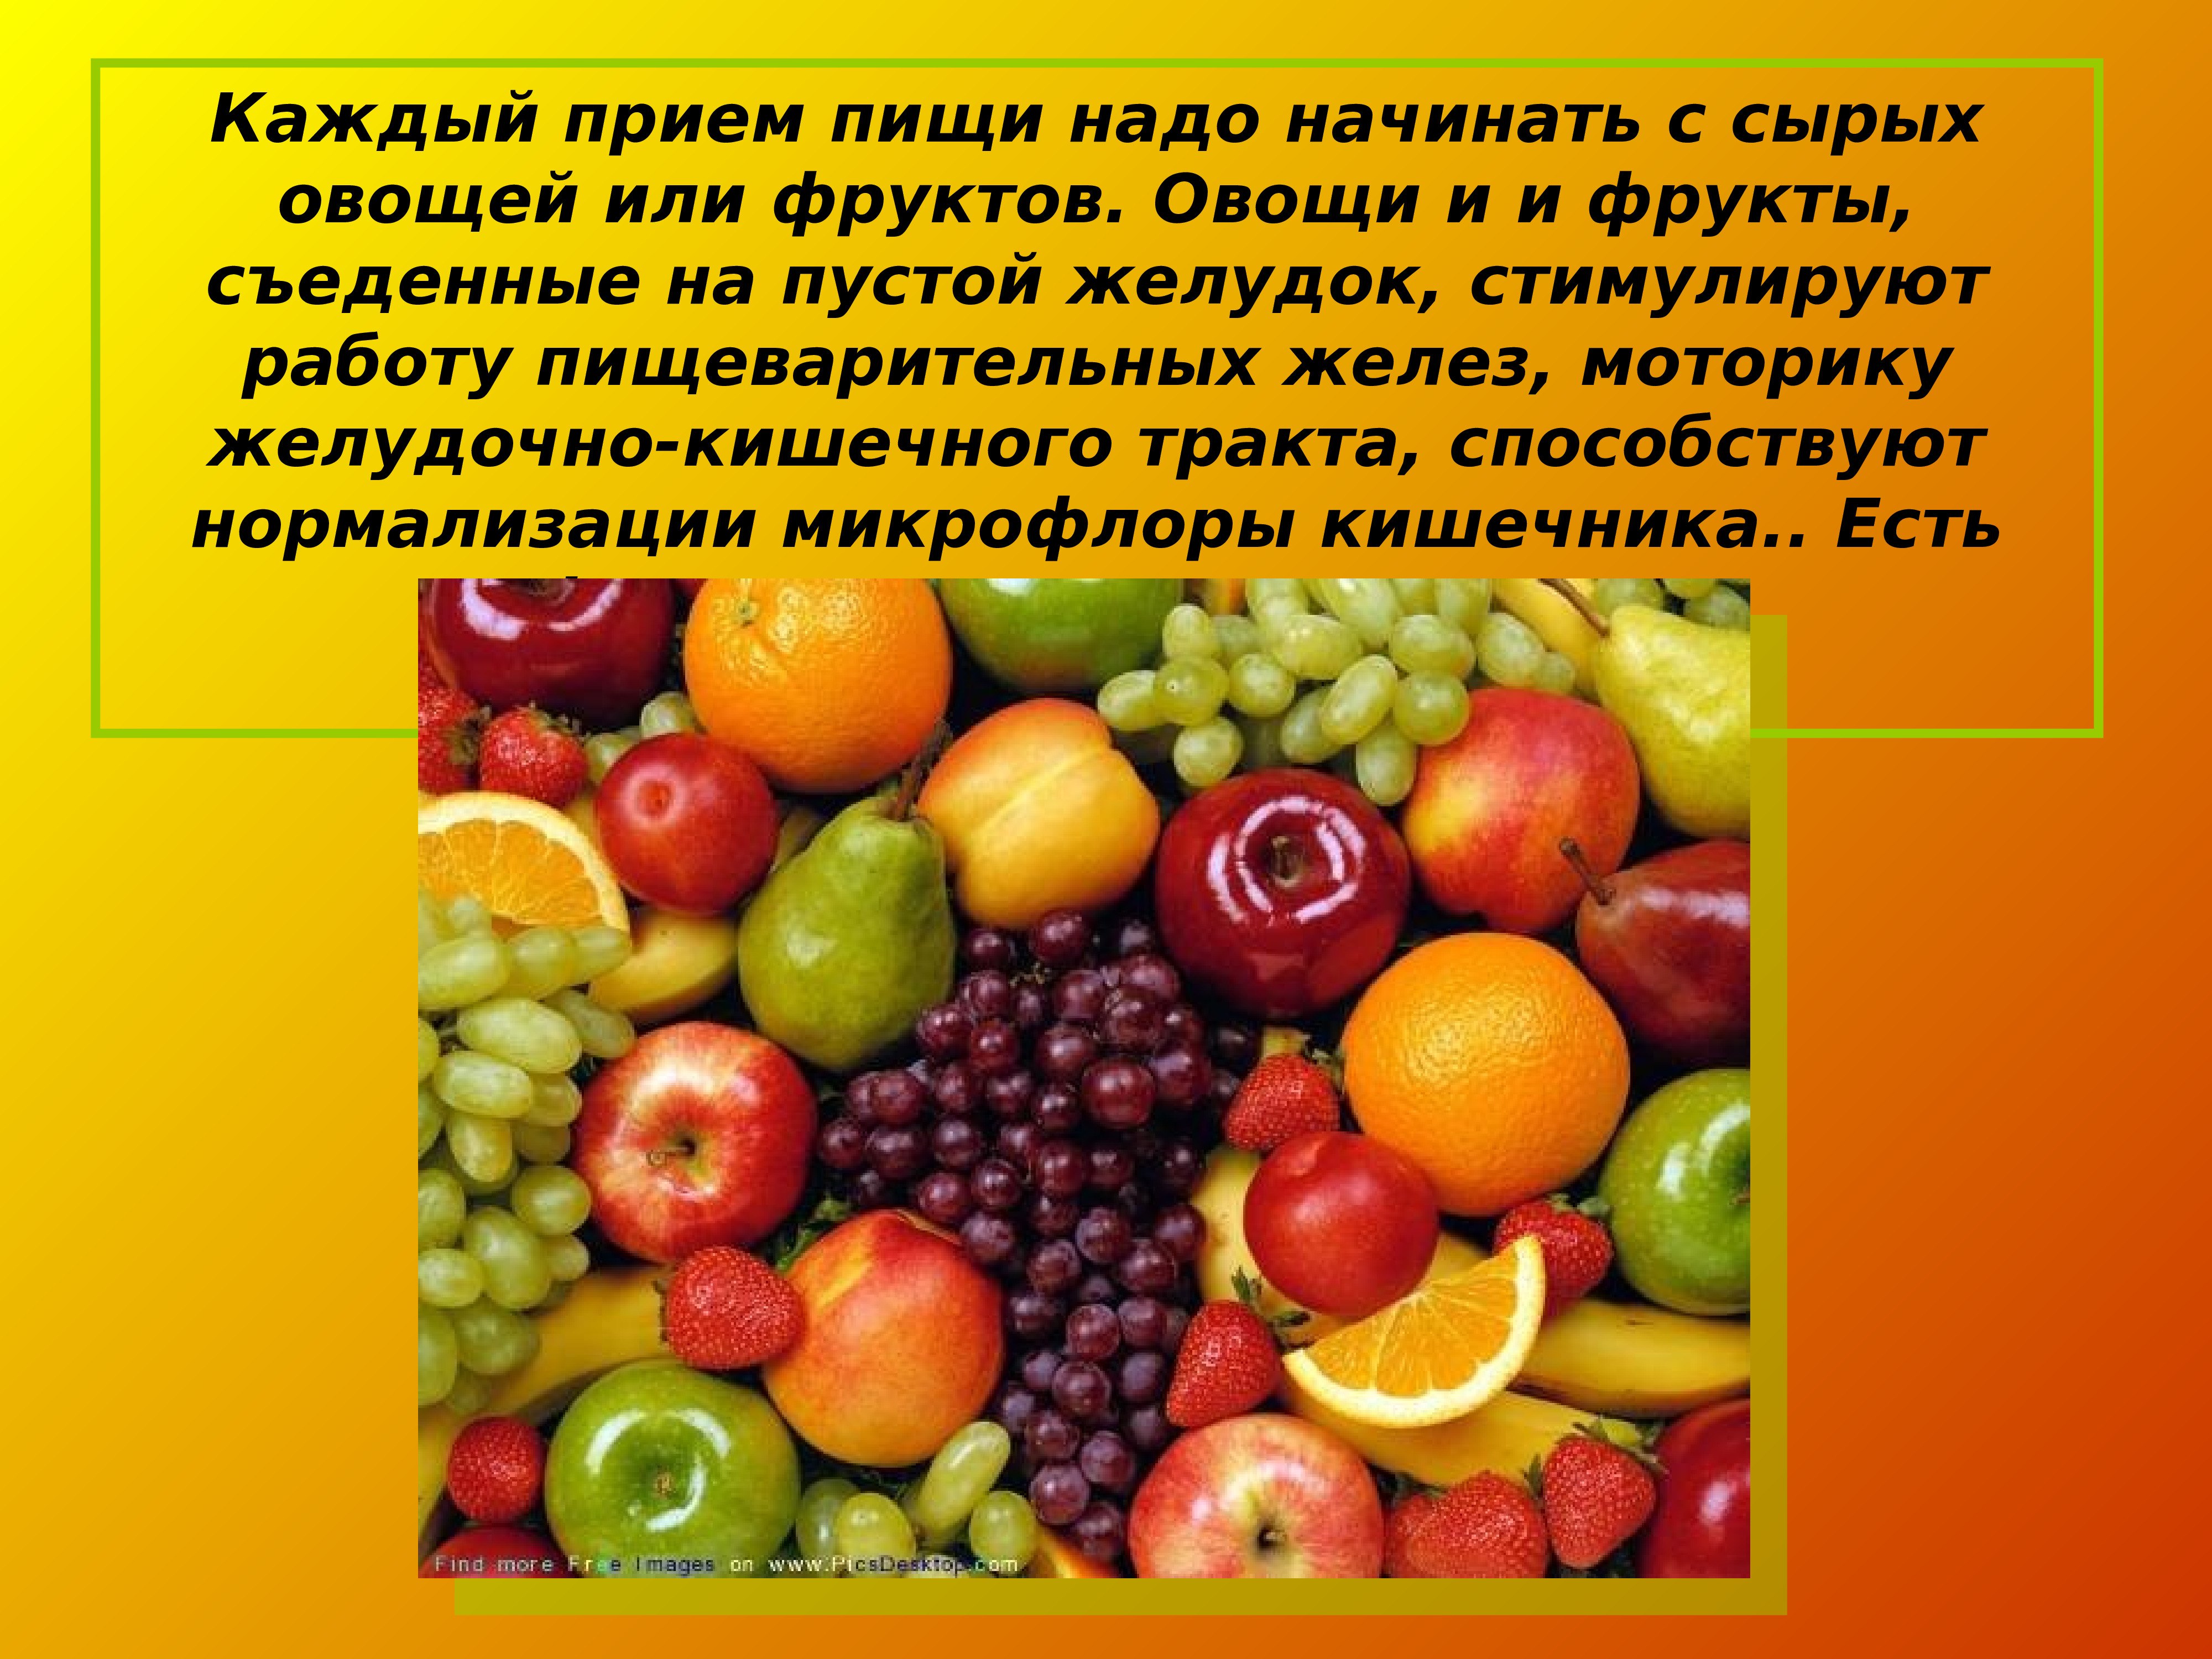 Ешь больше фруктов и овощей. Полезные фрукты и овощи. Овощи для презентации. Польза овощей и фруктов. Овощи и фрукты полезные продукты.